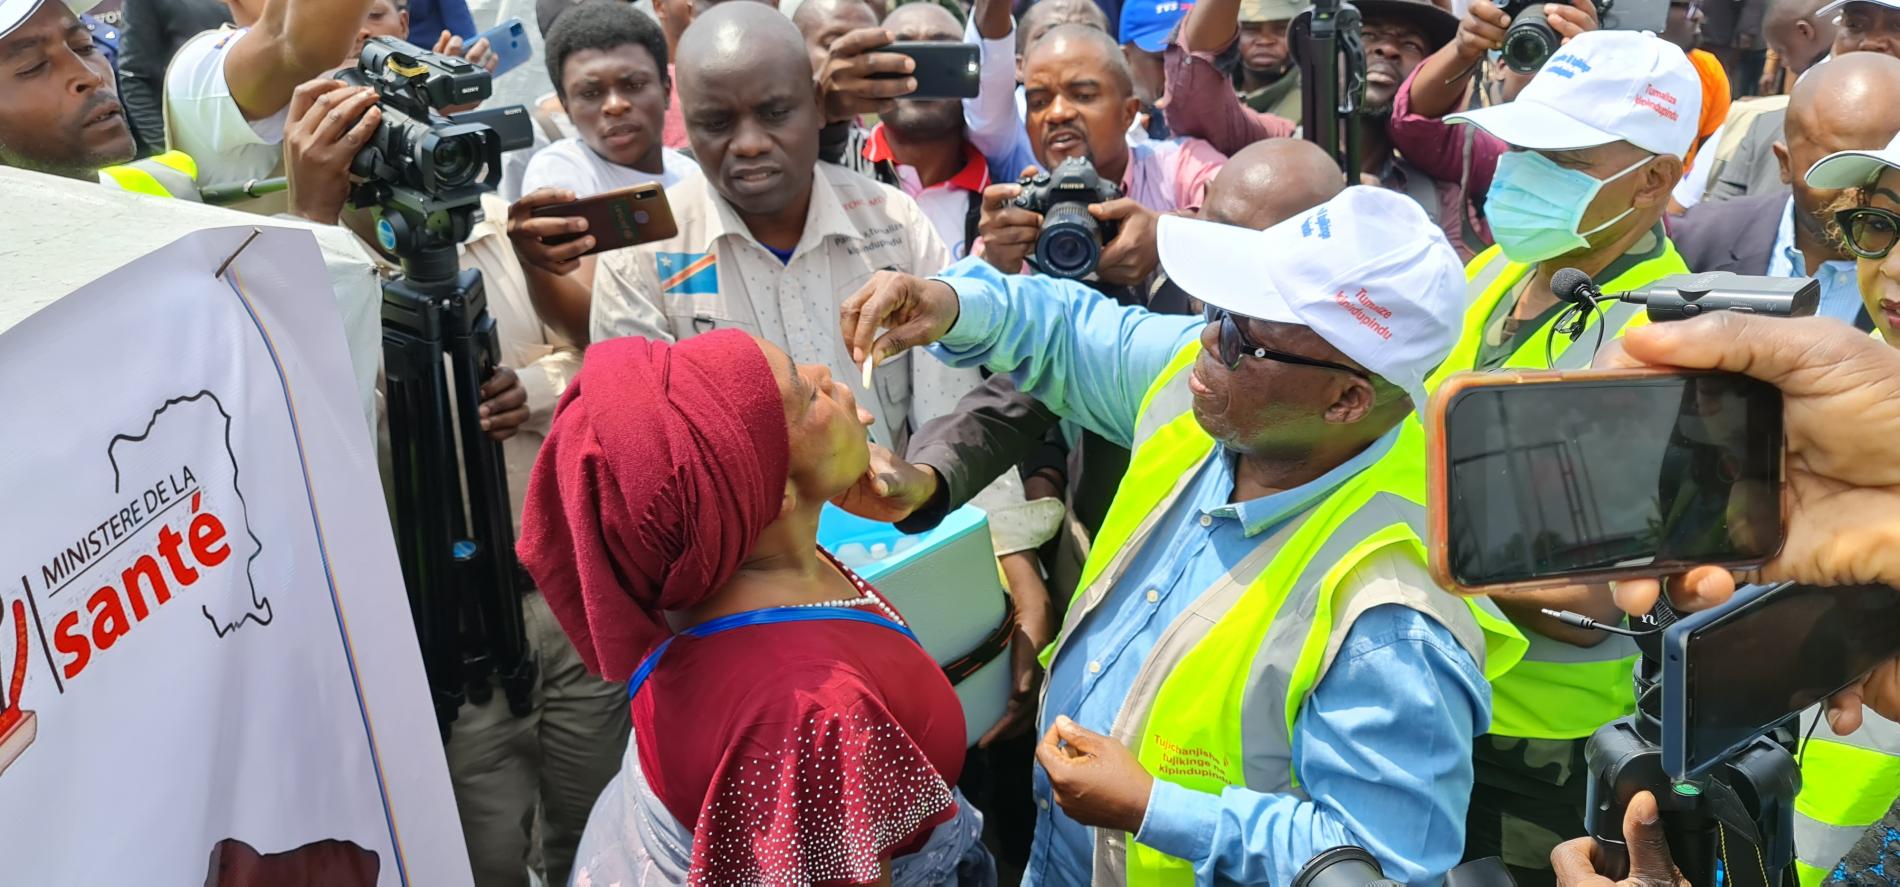 Modeste Mutinga Mutuishayi, Ministre des Affaires sociales, Actions Humanitaires et Solidarité Nationale lançant la vaccination orale contre le choléra au site de Kanyaruchinya, avec le soutien de l'OMS, Gavi et du Groupe international de coordination, ICG.  